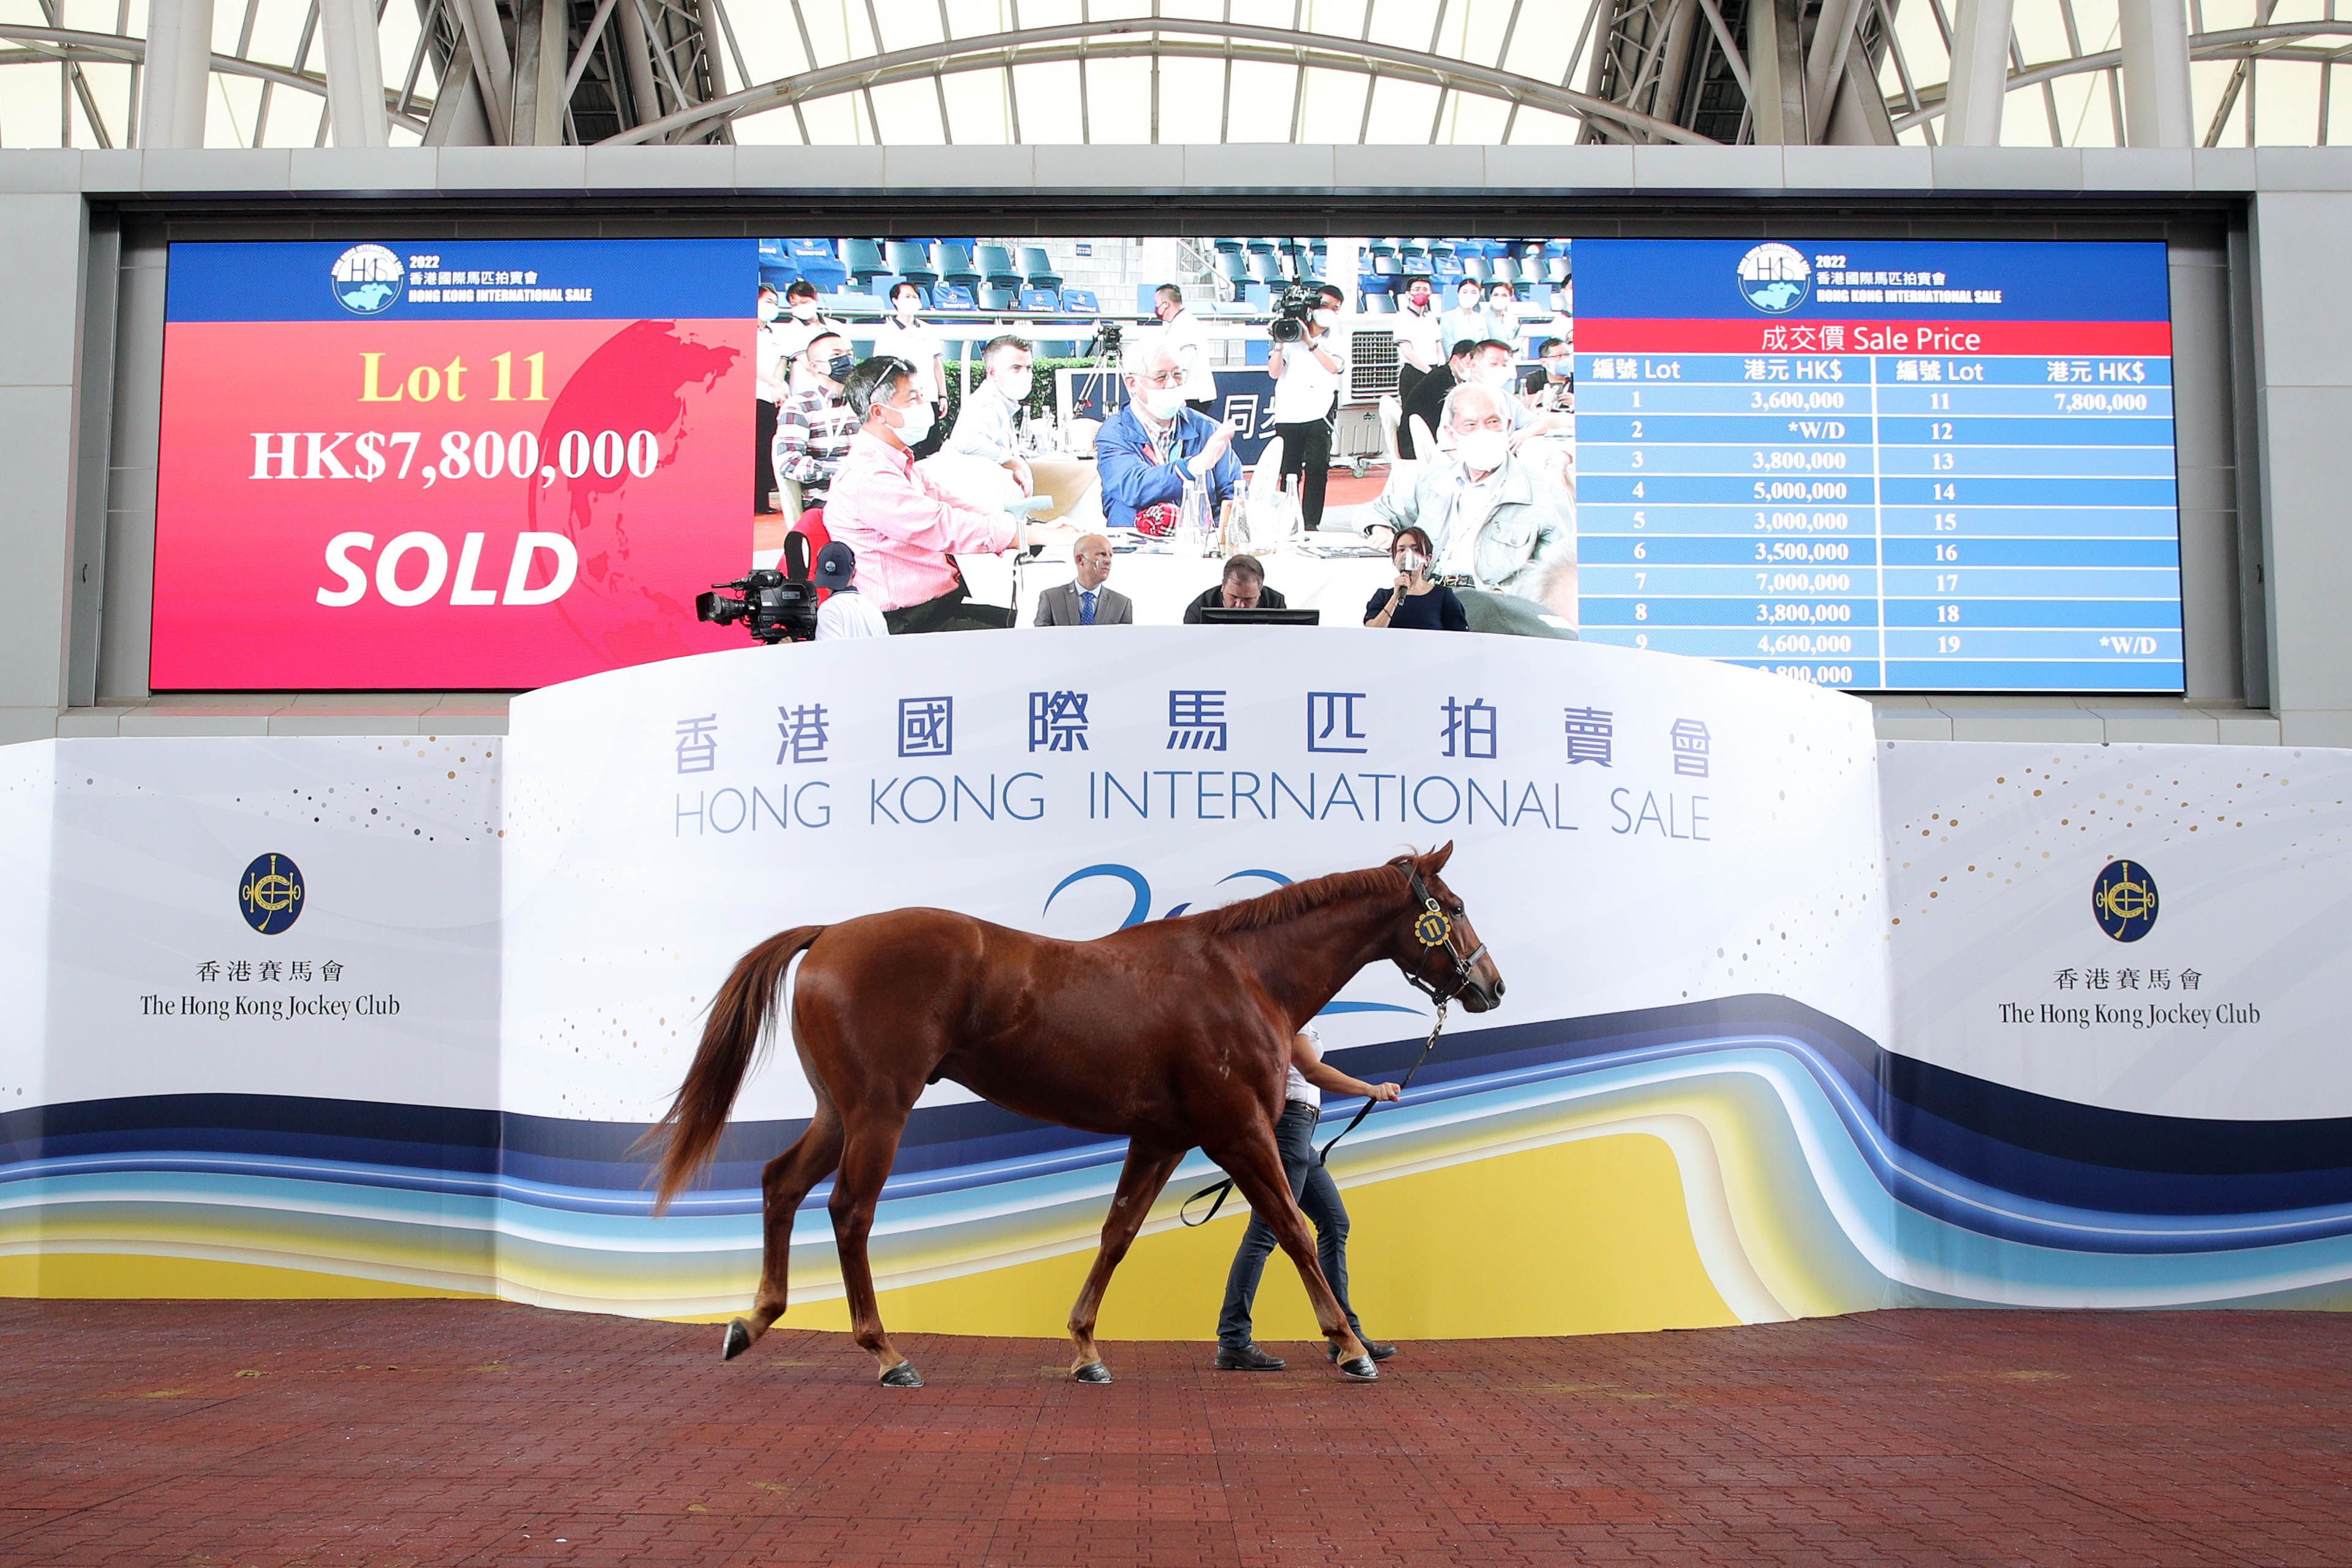 編號11拍賣馬以七百八十萬港元售出，成為今天拍賣價最高一駒。